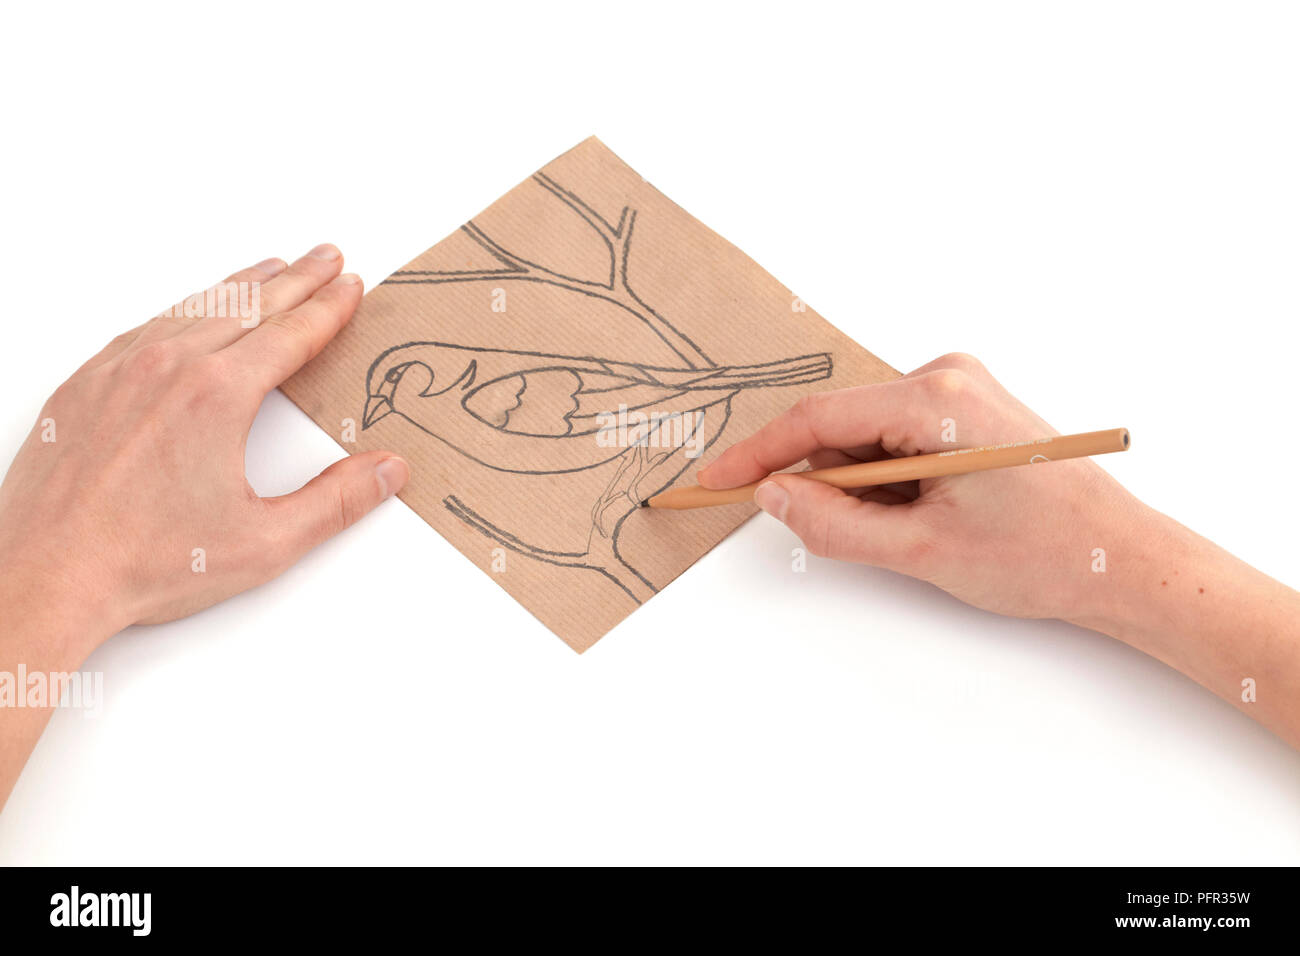 Disegno di un disegno su un pezzo di carta marrone, mostrando un uccello su un albero (design per un mosaico) Foto Stock